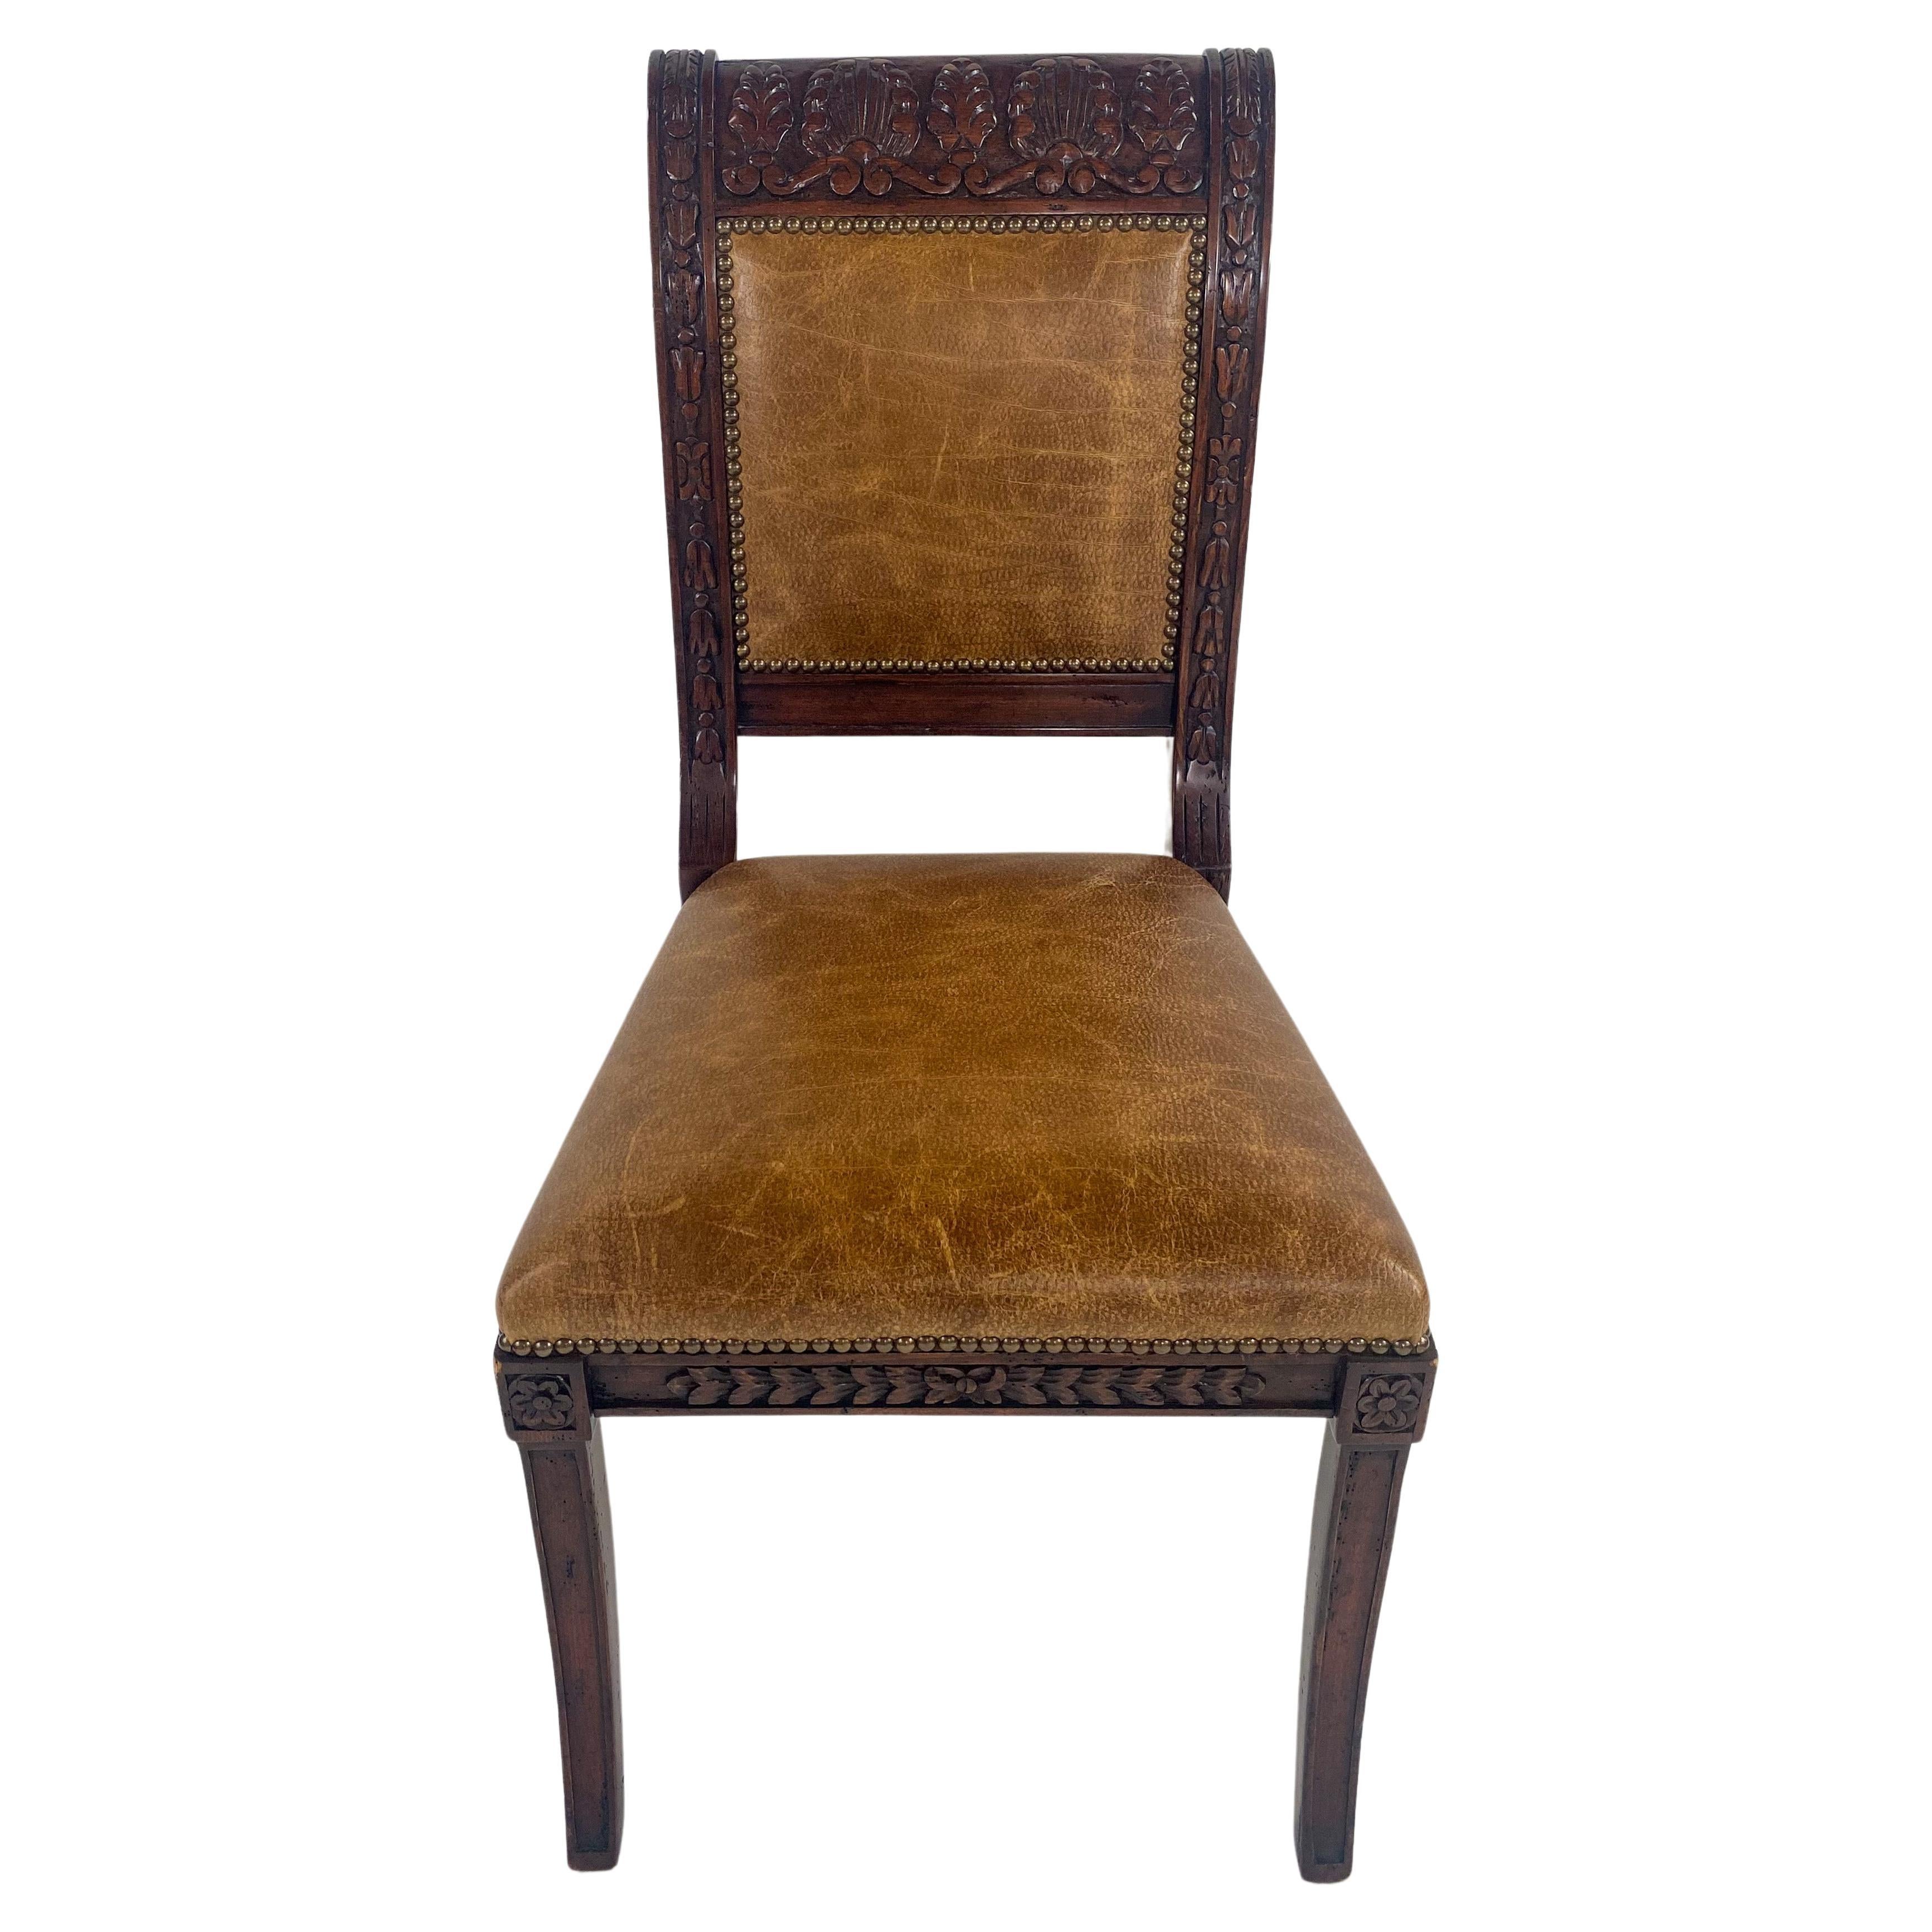 Un superbe ensemble de 8 chaises de style Empire français. Les chaises sont fabriquées en bois d'acajou de qualité. Le cadre est délicieusement sculpté à la main et présente d'étonnants motifs floraux et acanthes. Le dossier et l'assise sont